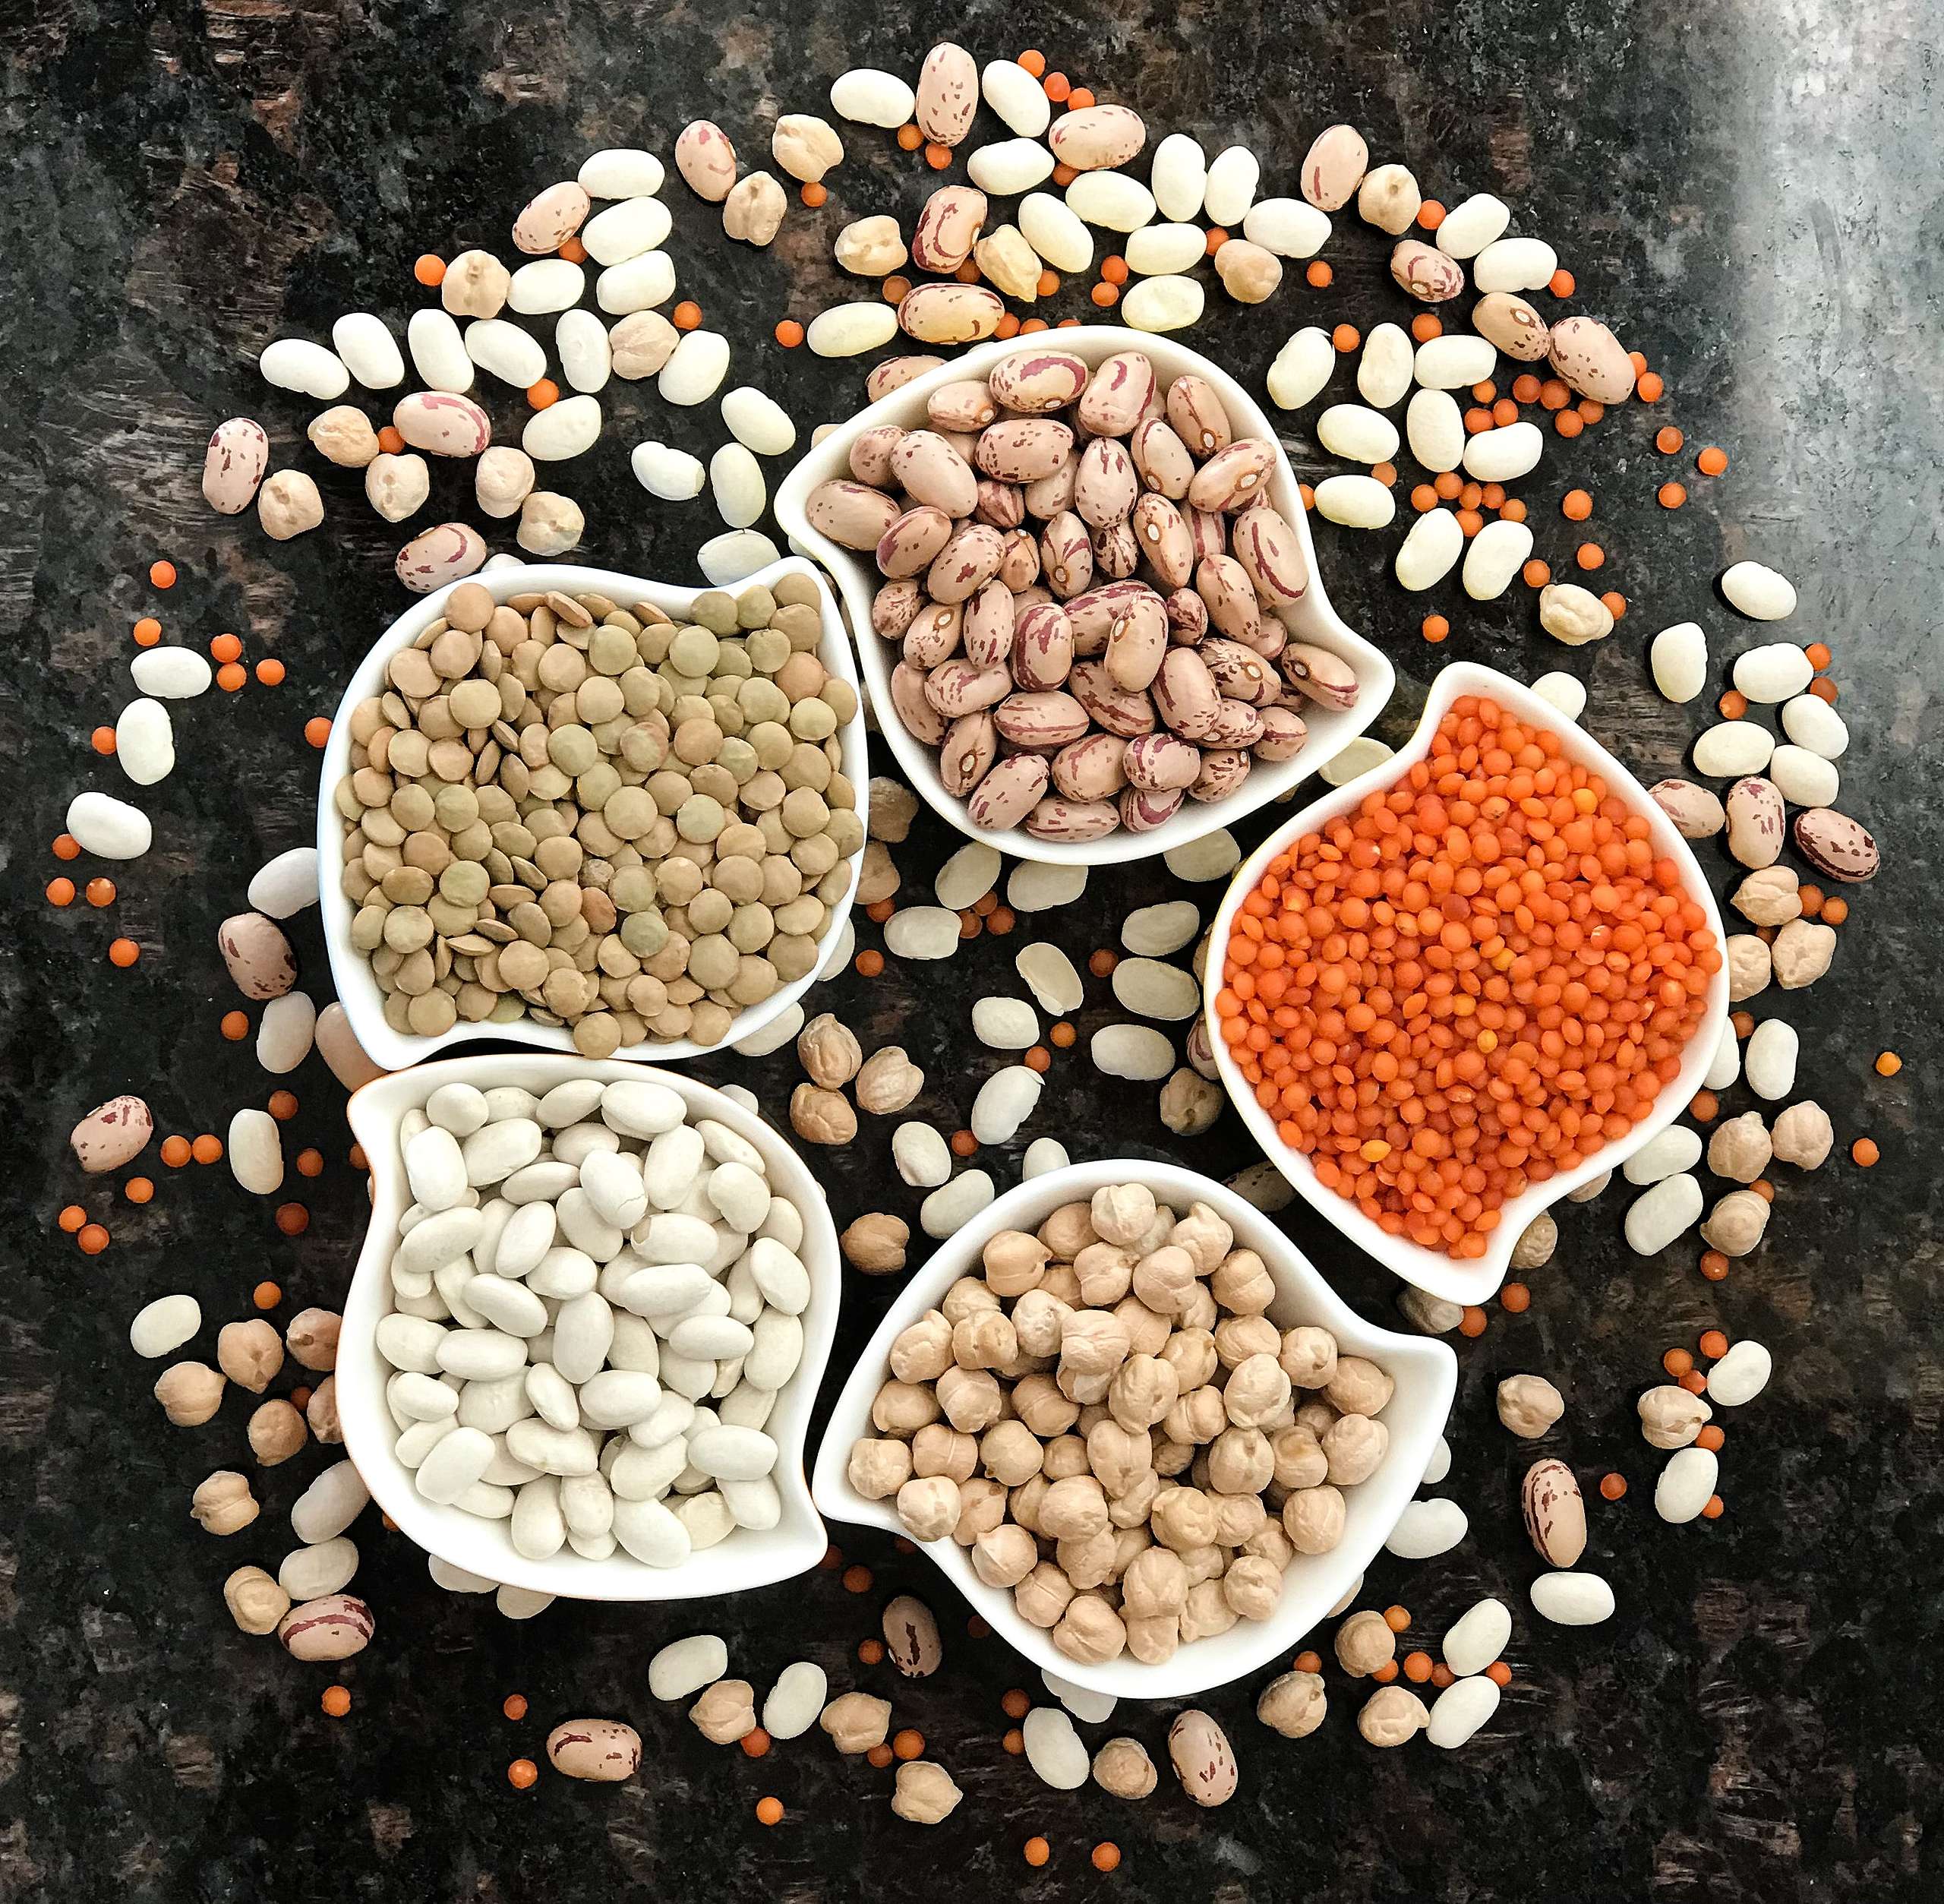 豆類及堅果含有極高的營養價值，適量食用，可為人體補充必須胺基酸及其他營養素。© Colours of Turkey / unsplash.com